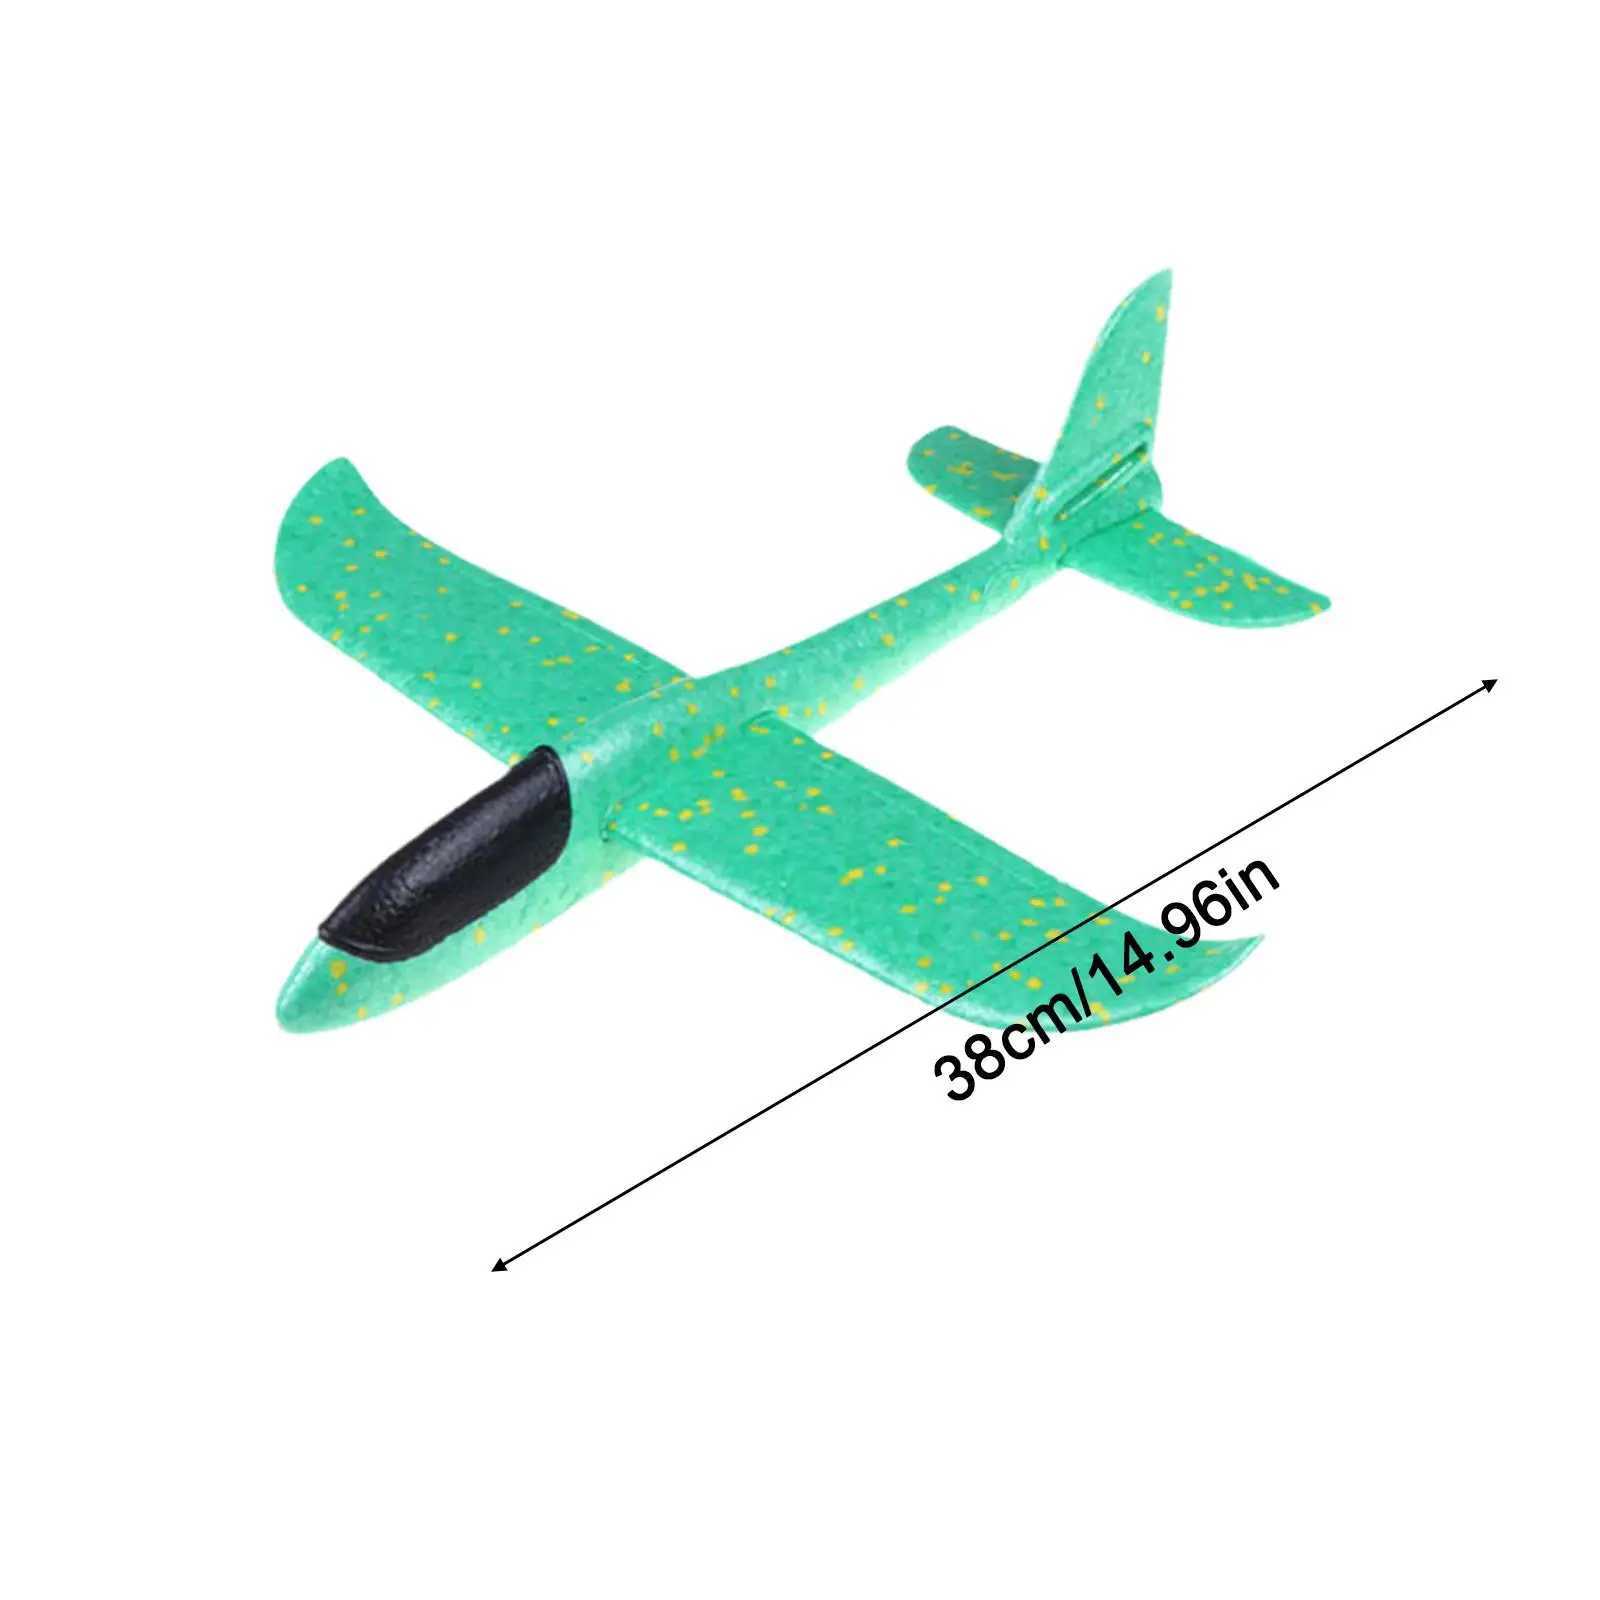 Modello di aereo 38CM Kit di aereo in schiuma EPP piccolo giocattolo volante lanciato a mano aereo gioco all'aperto modello di aereo resistente agli urti i bambini